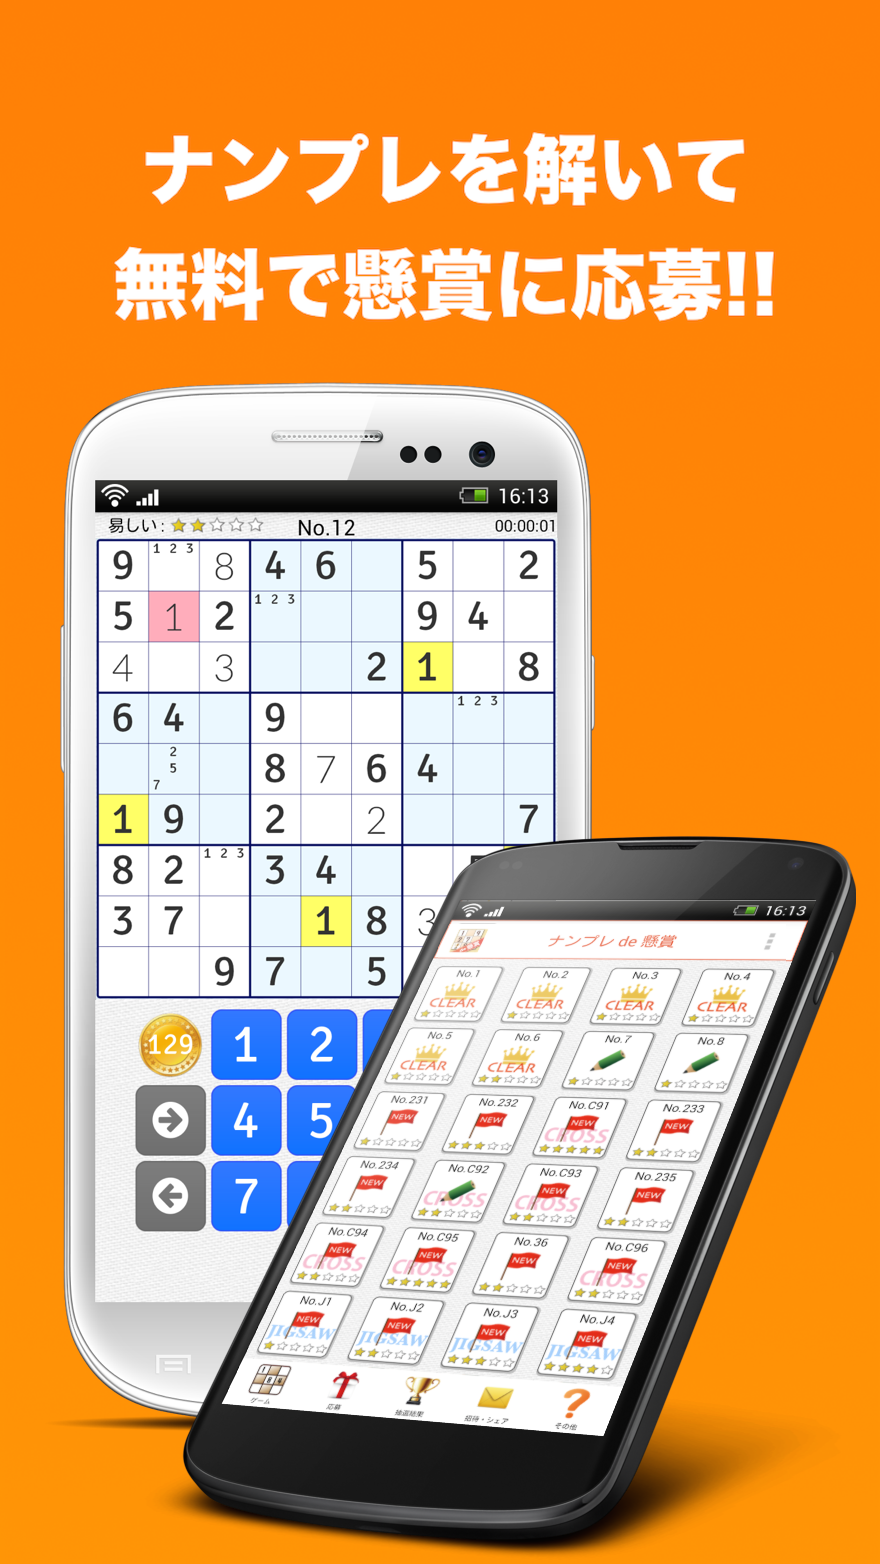 Screenshot 1 of Sudoku de Sweepstakes - កម្មវិធី Sweepstakes ឥតគិតថ្លៃទាំងស្រុងជាង 3000 ល្បែងផ្គុំរូប Sudoku សម្រាប់ការបណ្តុះបណ្តាលខួរក្បាល និងពេលវេលាសម្លាប់។ 2.6.8